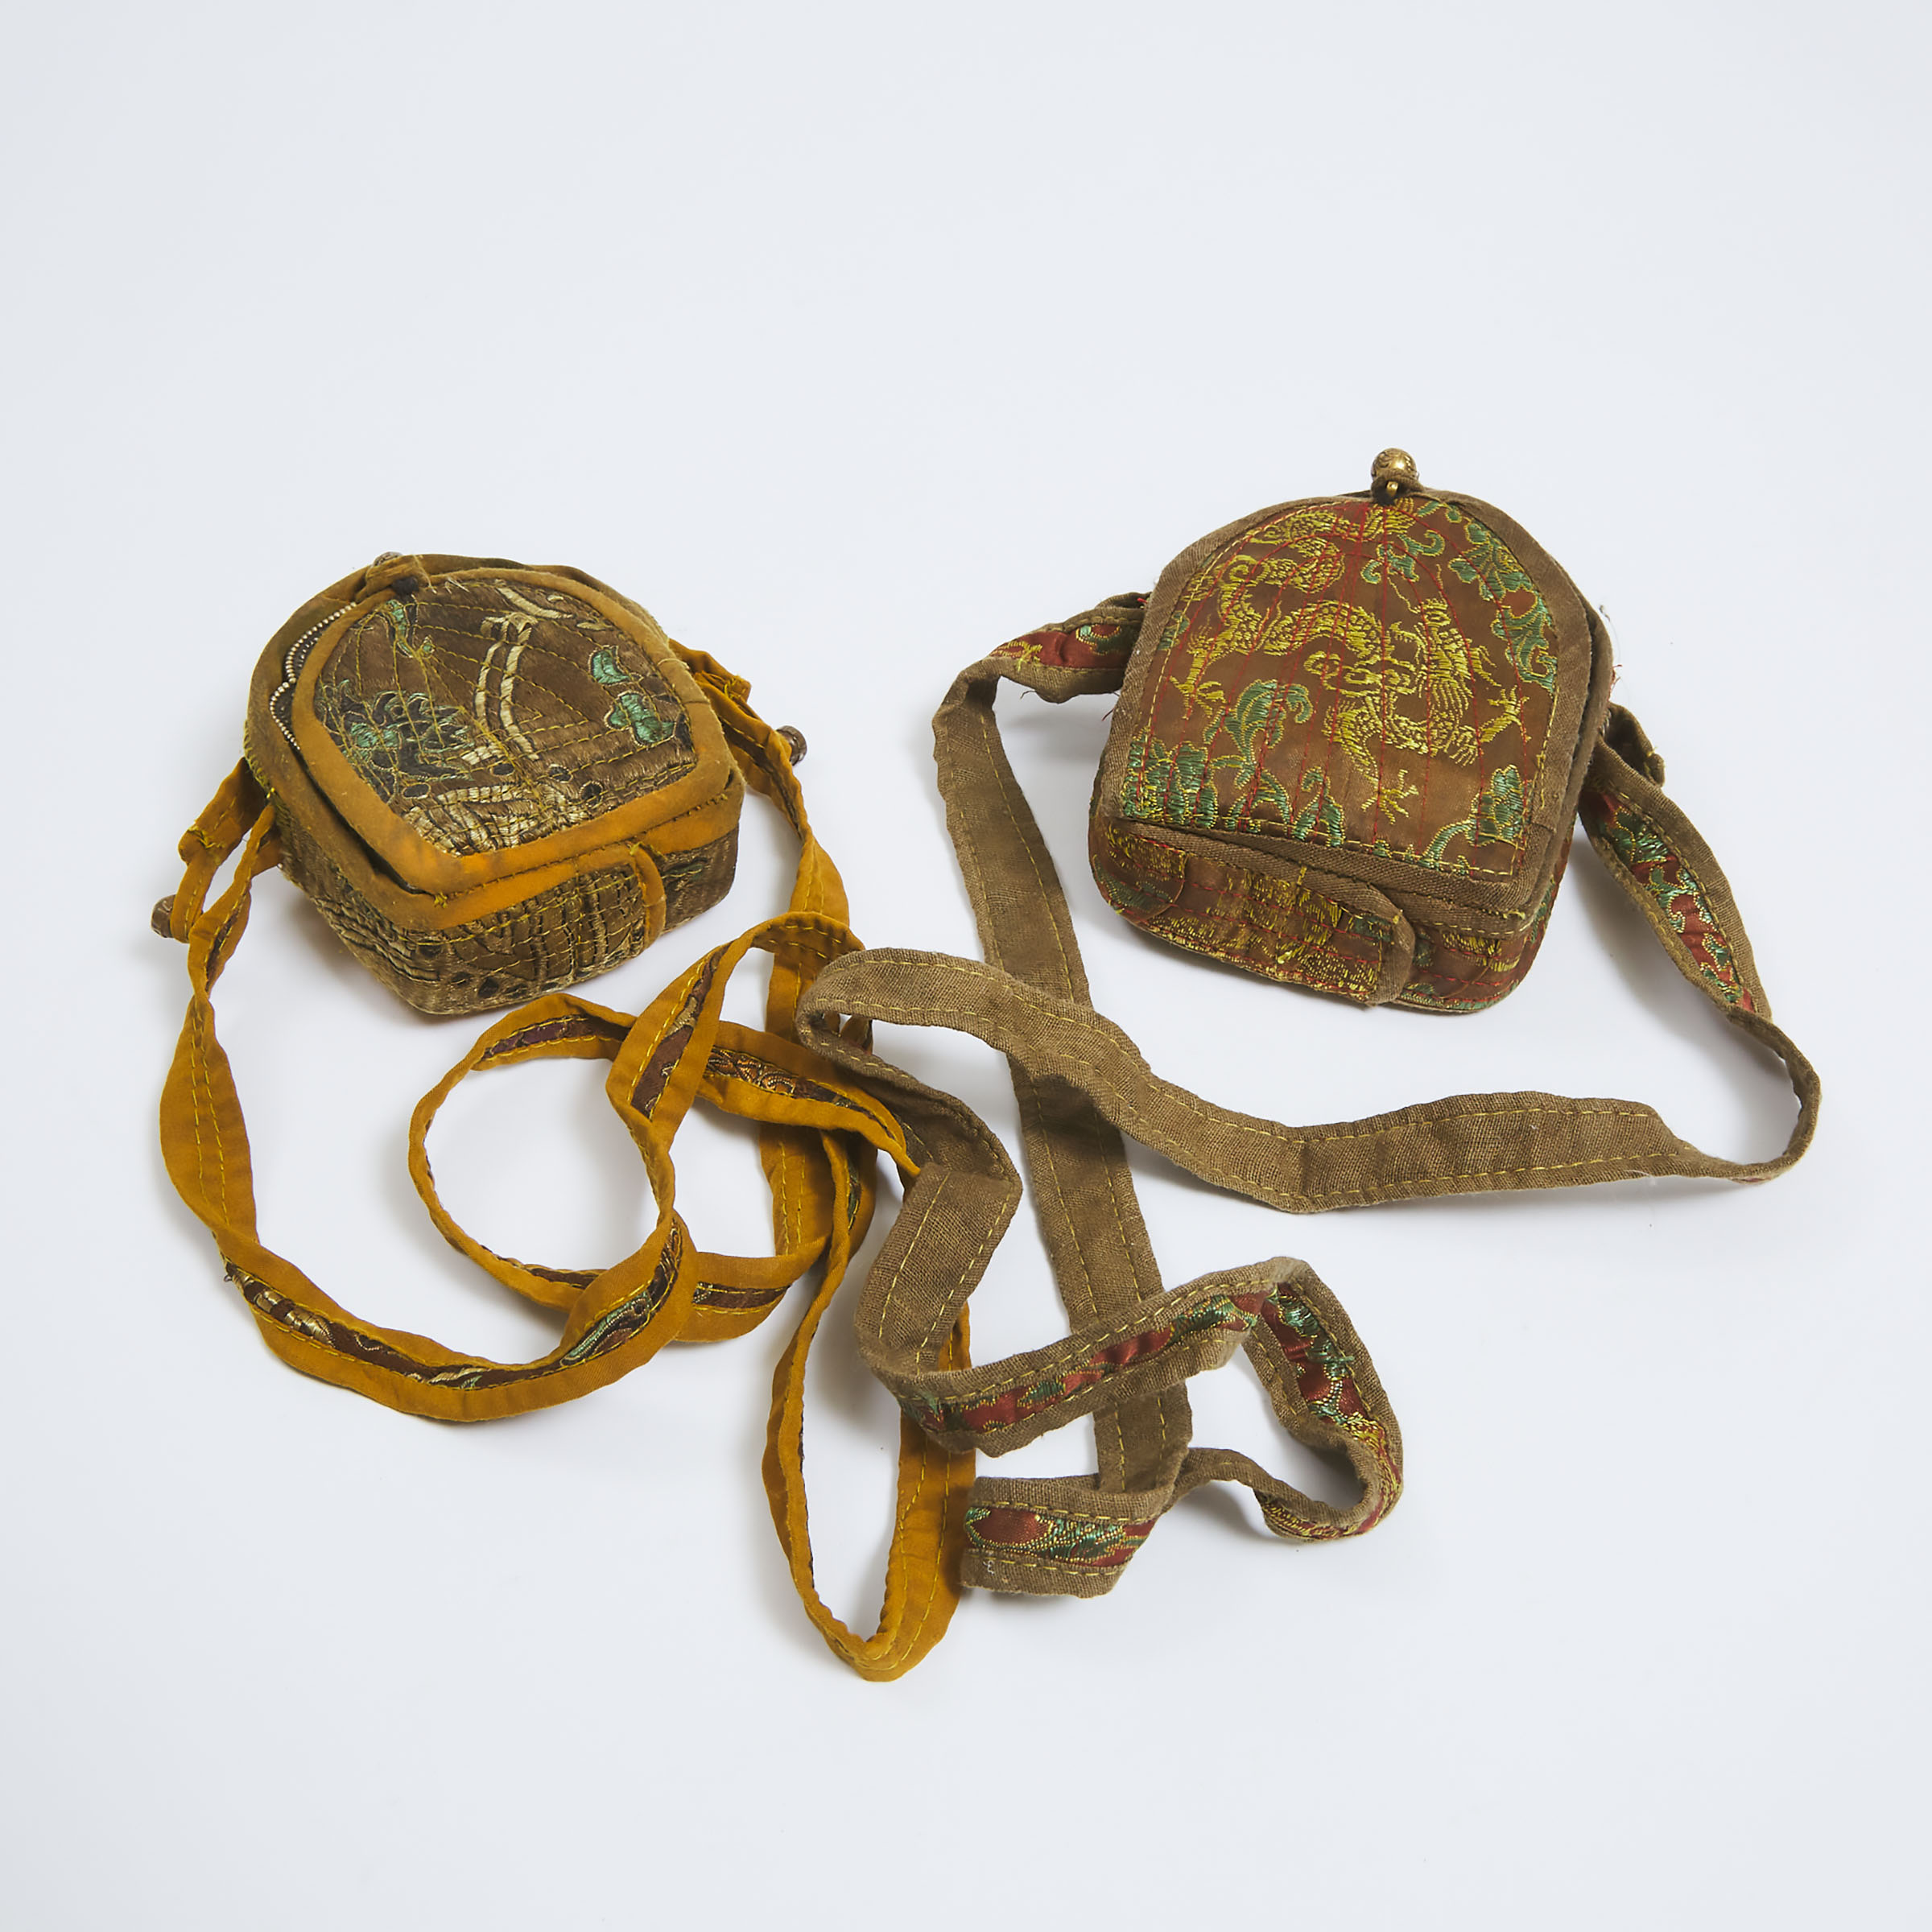 Two Tibetan Portable Amulet Boxes (Gau), 19th Century